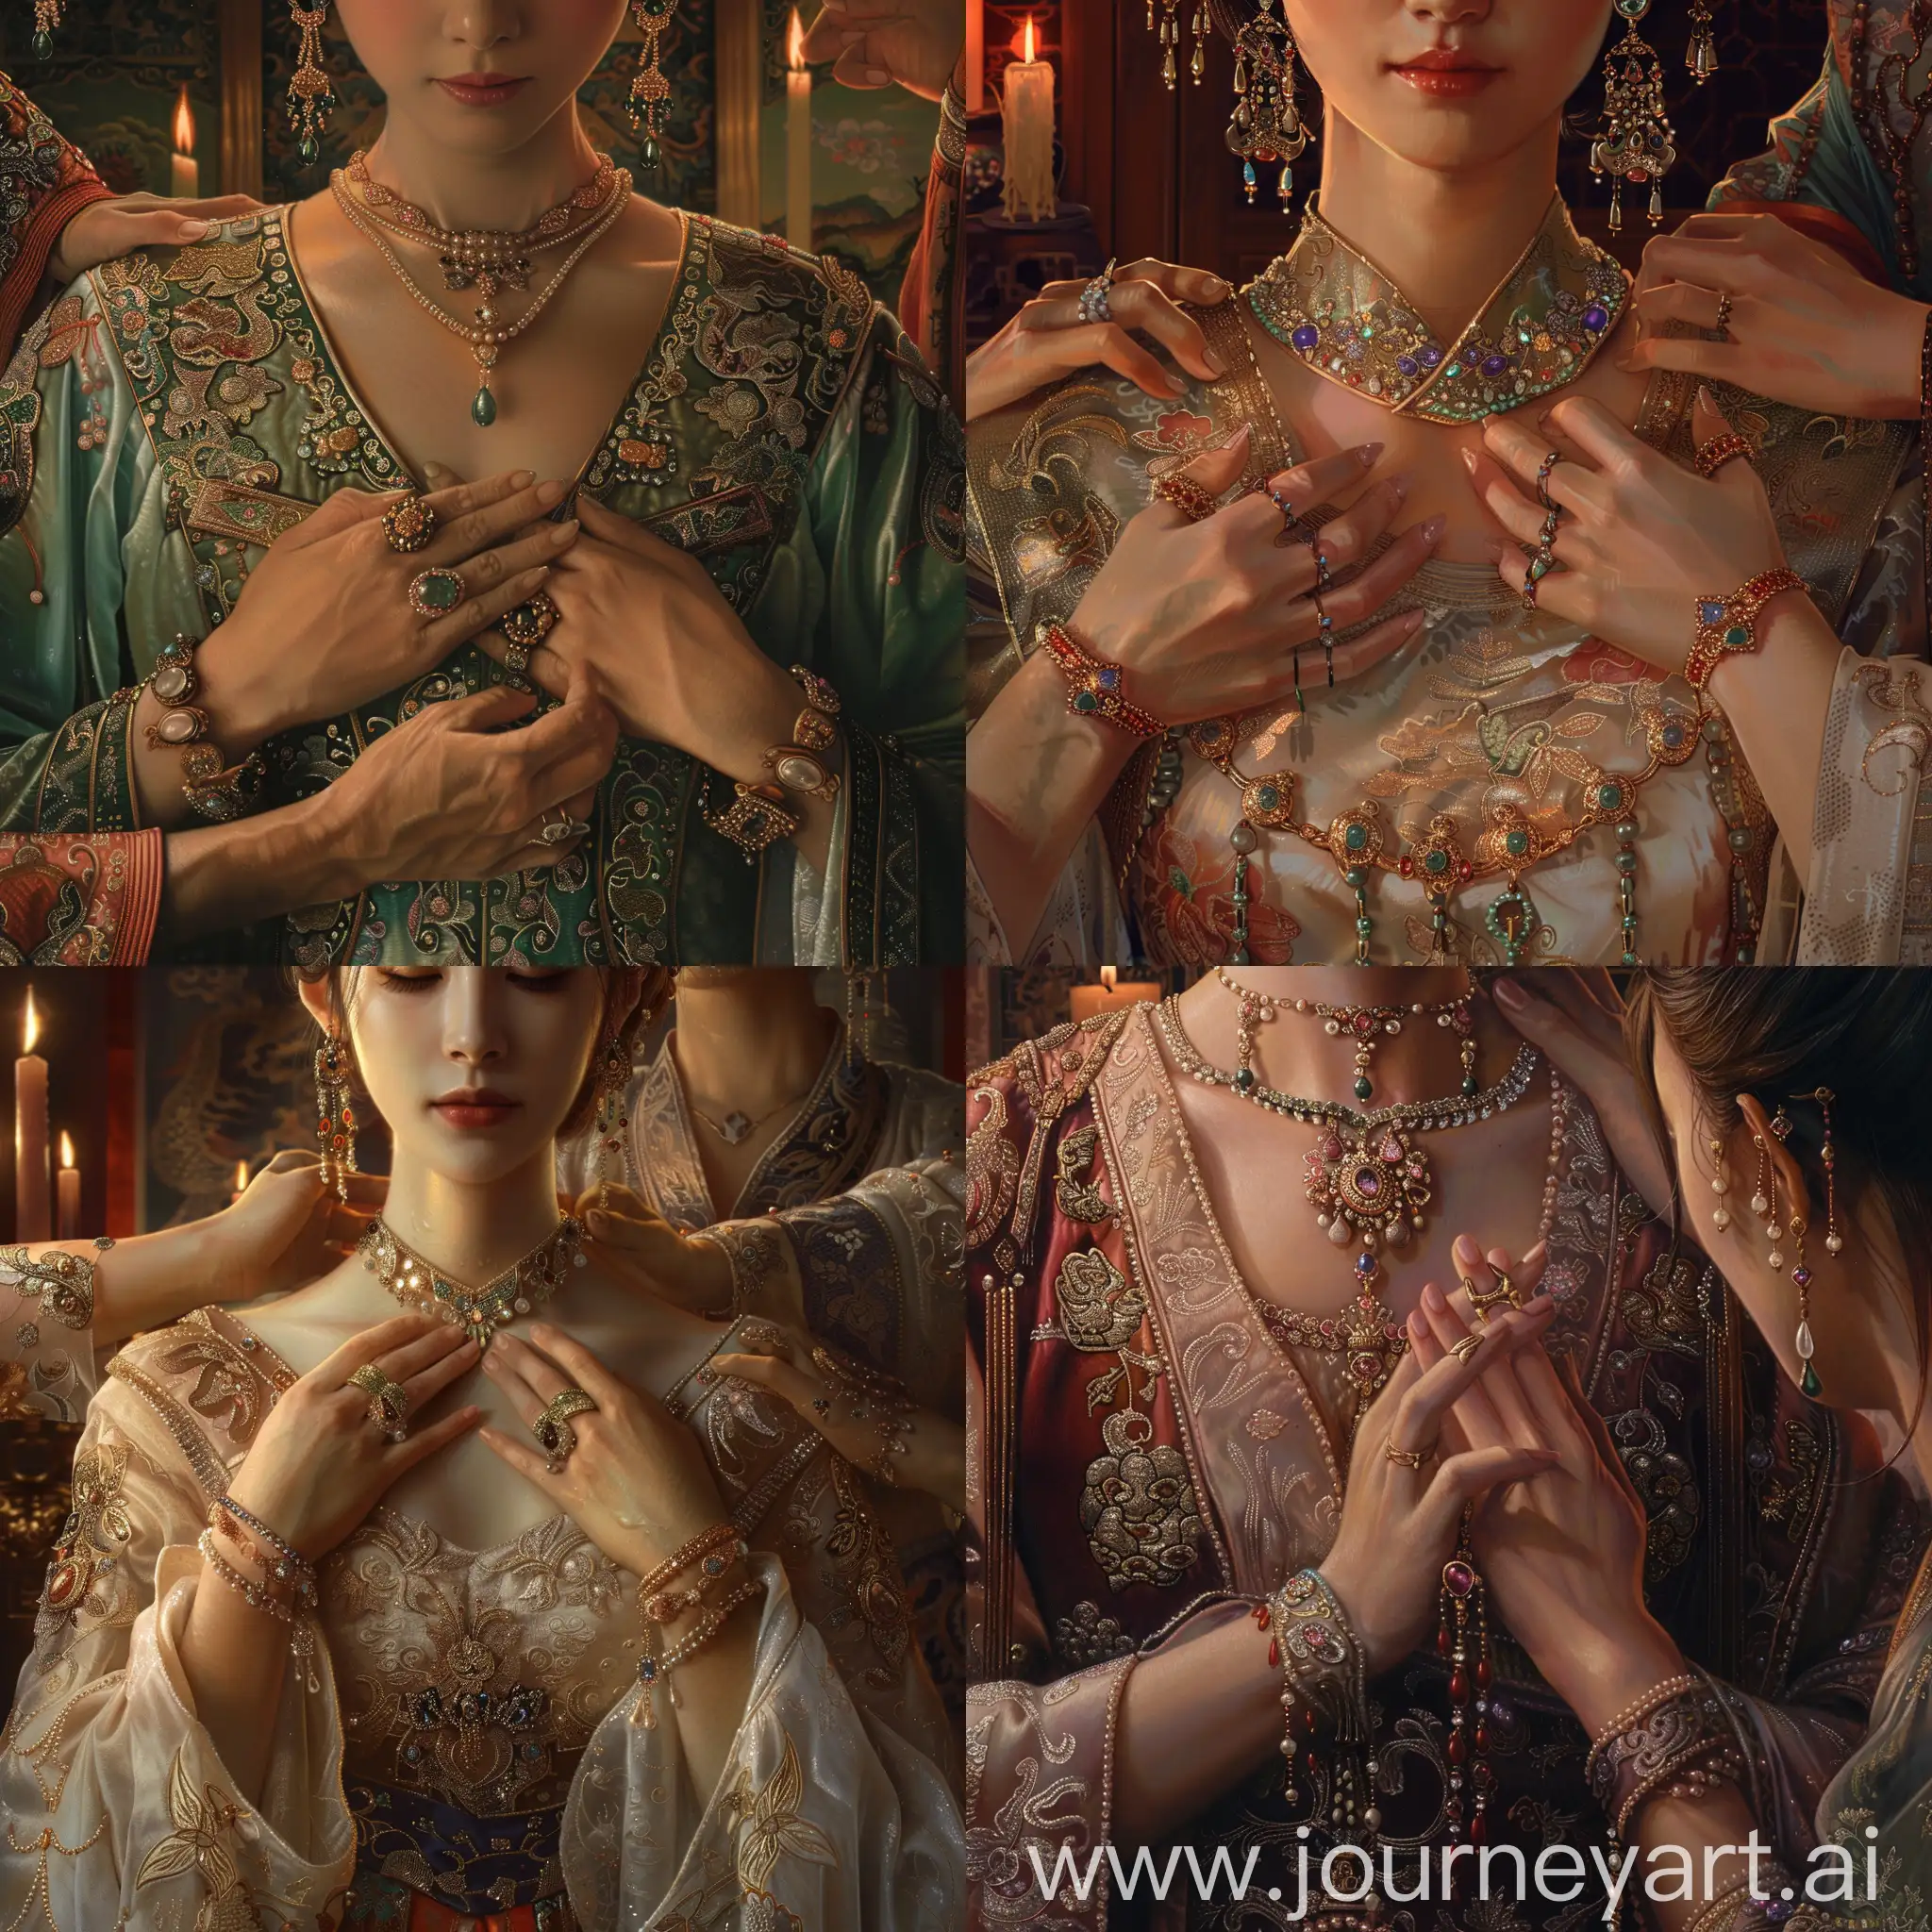 画一副侍女给中国女皇按摩肩膀的图片，突出女皇的手，细腻白皙，佩戴着诸多珠宝，和长长的指甲套。  古代  细节丰富  烛光  全景图  旗袍 高清